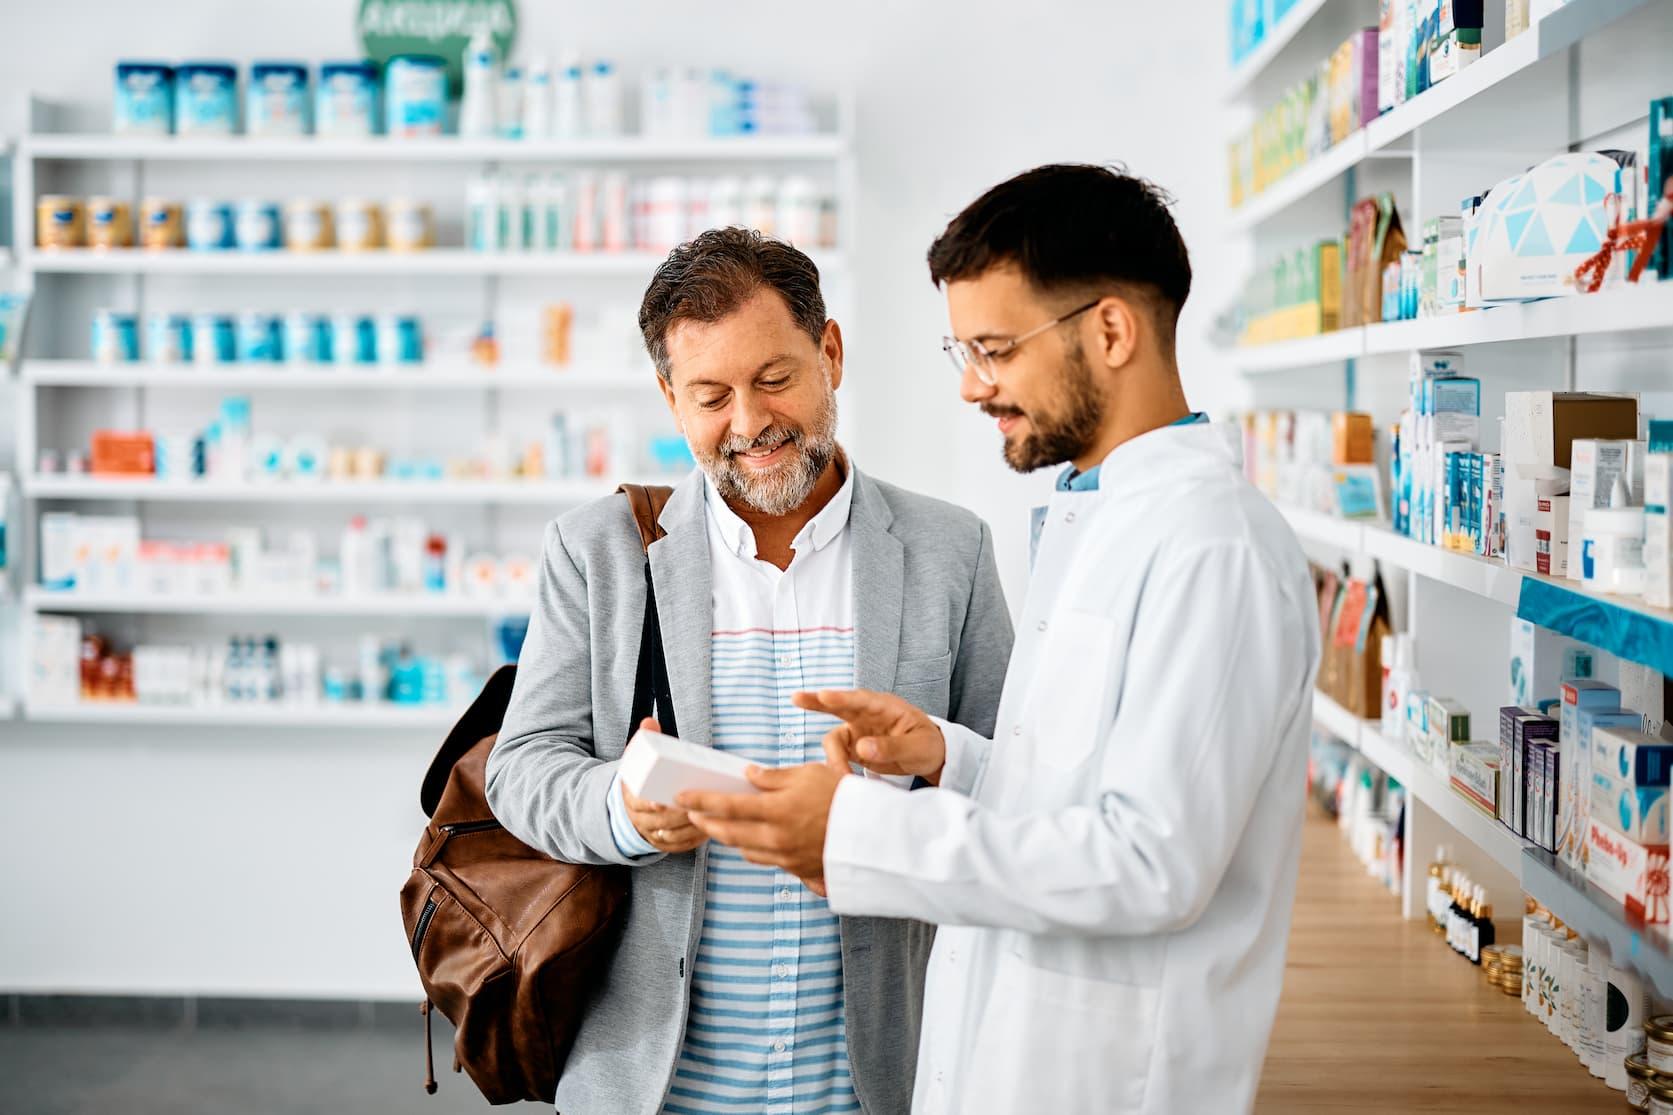 Sebrae Minas - Atendimento de qualidade é diferencial para pequenas farmácias